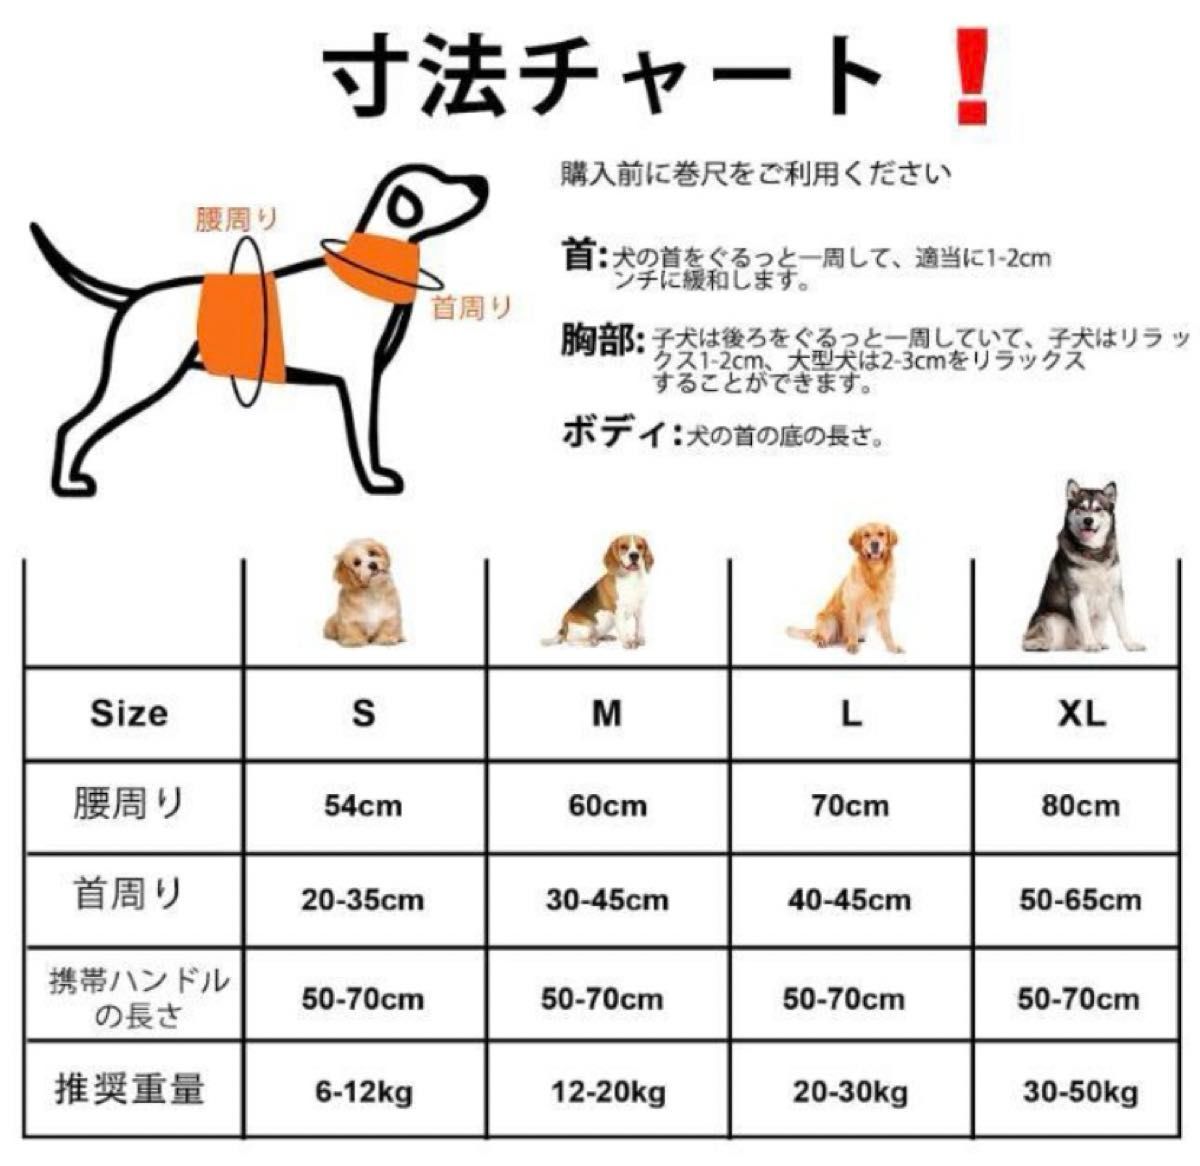 【新品】Wintchuk老犬 介護用品 犬 歩行補助 (S,オレンジ)